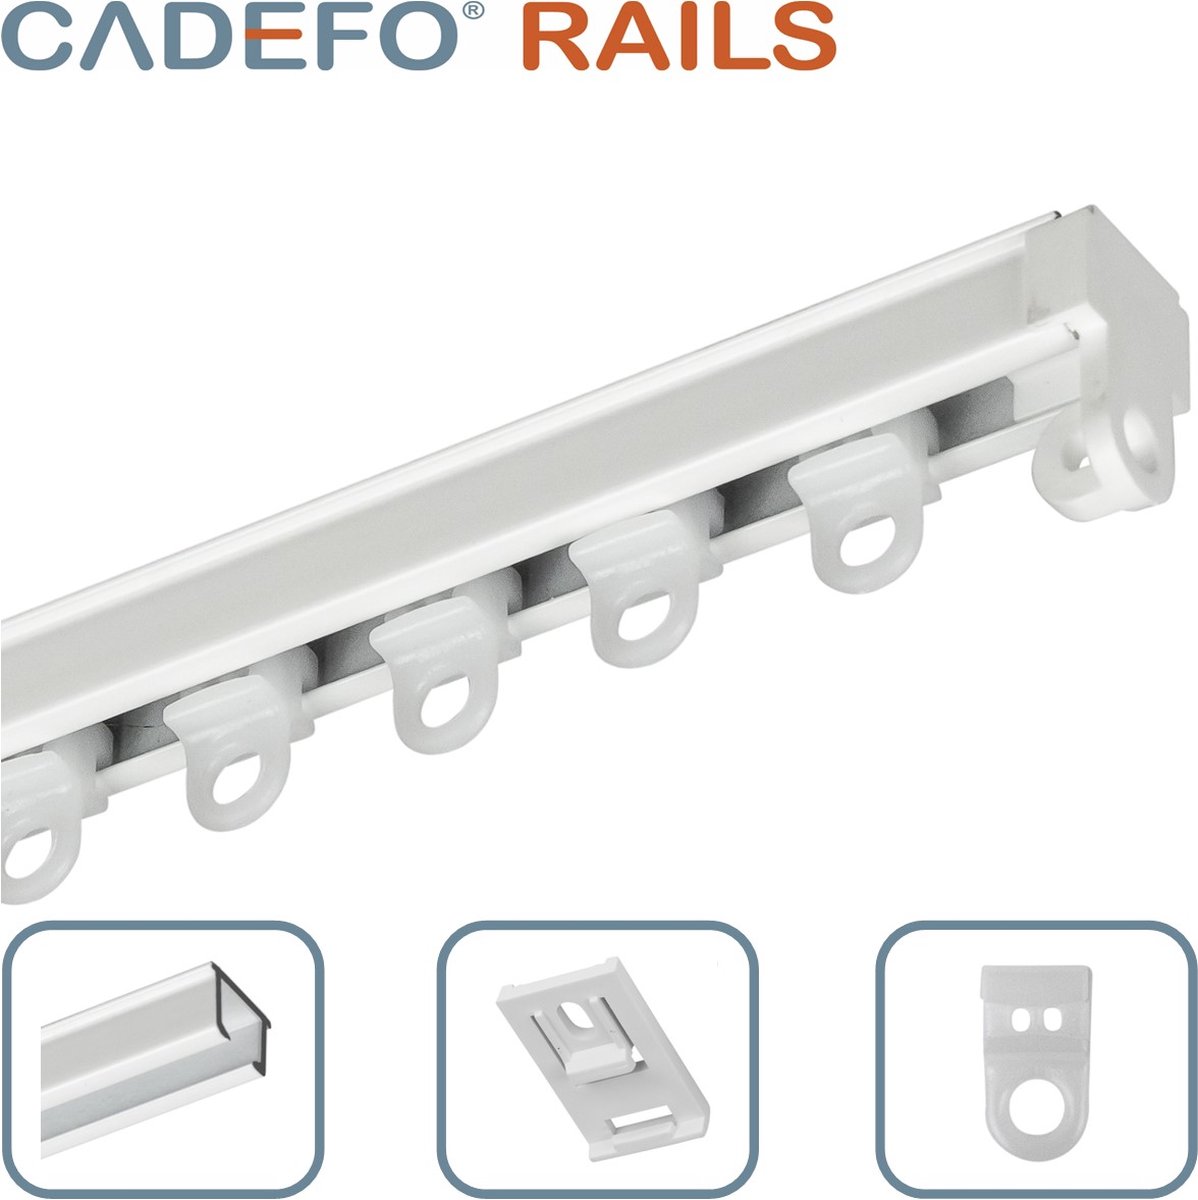 CADEFO RAILS (301 - 350 cm) Gordijnrails - Compleet op maat! - UIT 1 STUK - Leverbaar tot 6 meter - Plafondbevestiging - Lengte 315 cm